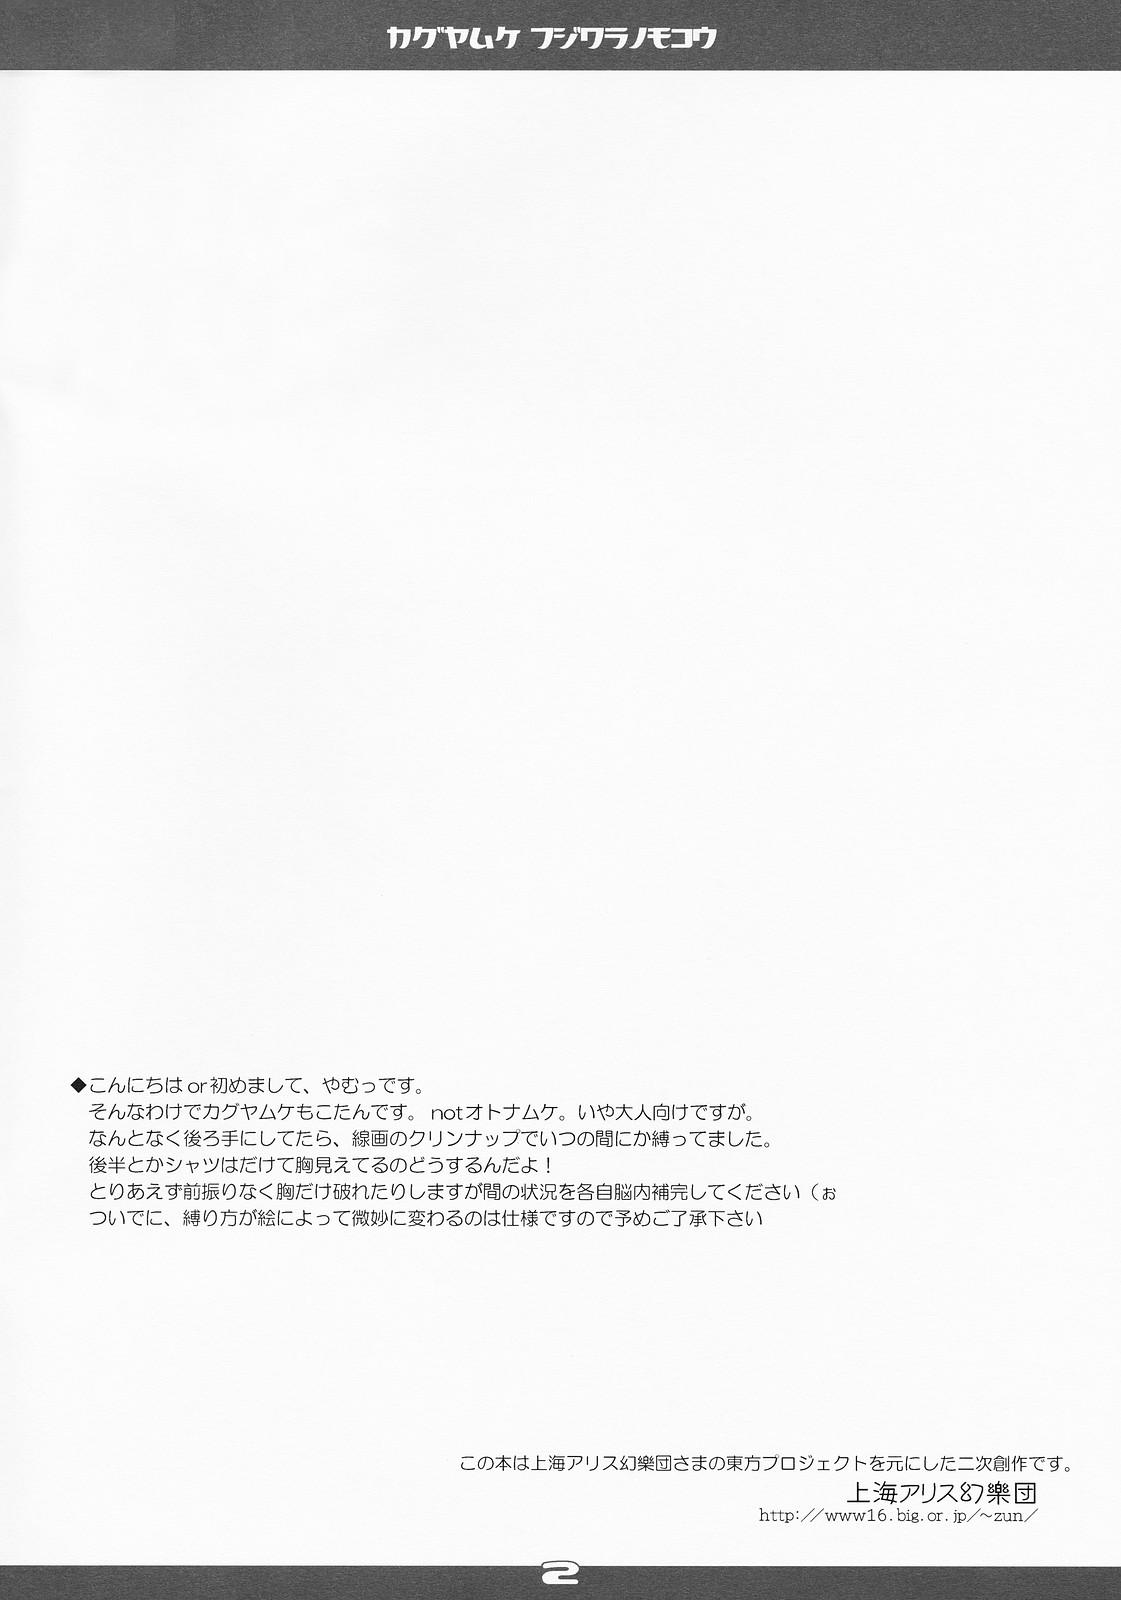 Peruana Kaguya Muke Fujiwara no Mokou - Touhou project Self - Page 2